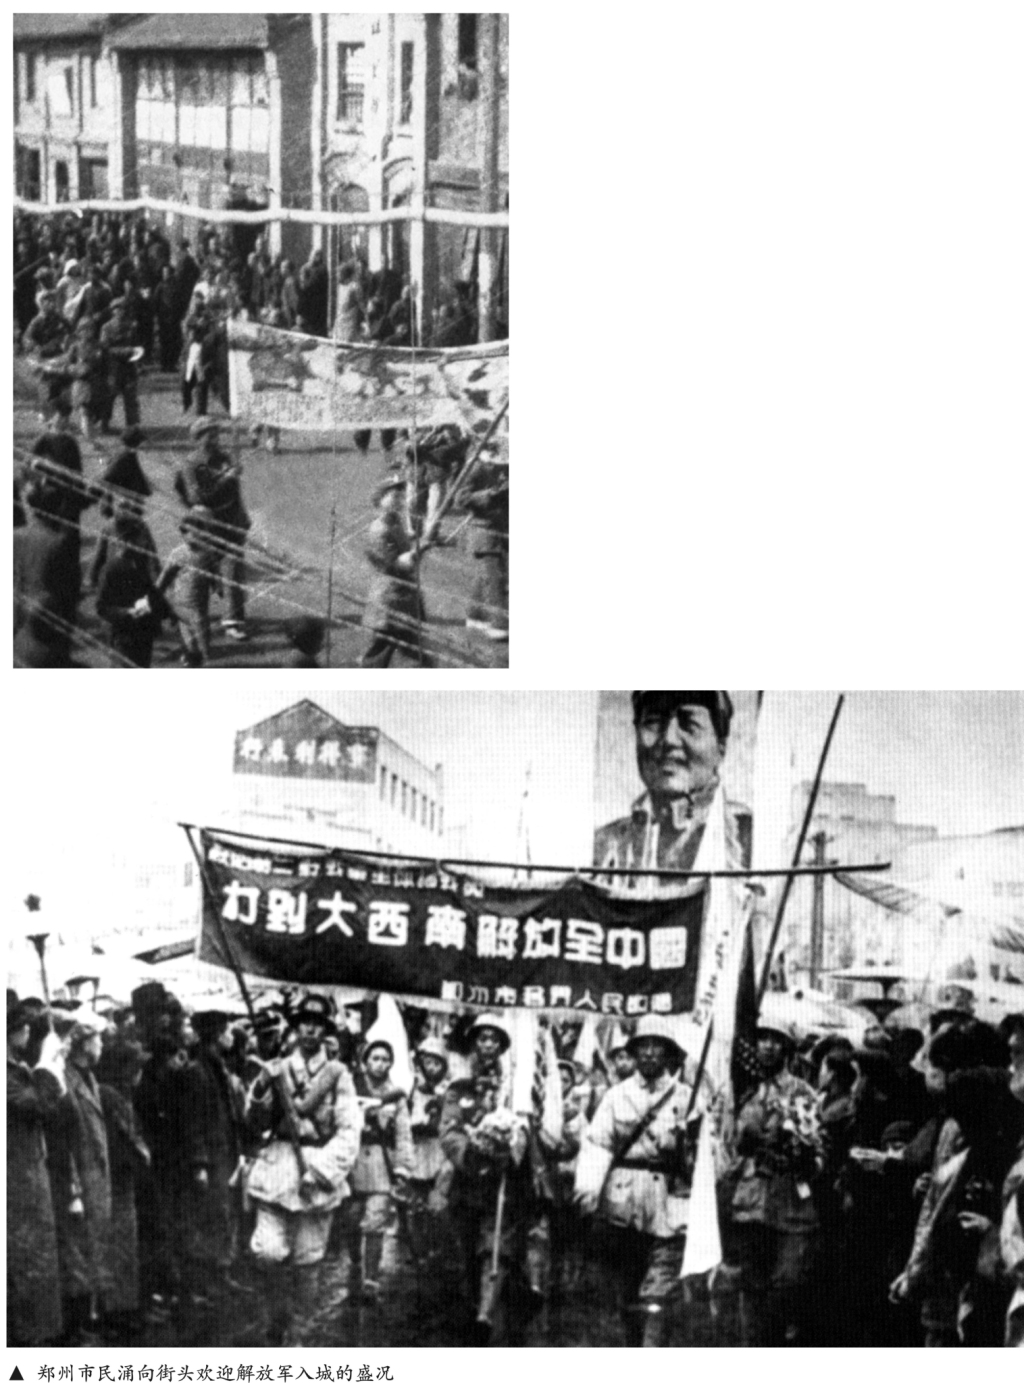 郑州市民涌向街头欢迎解放军入城的盛况.jpg